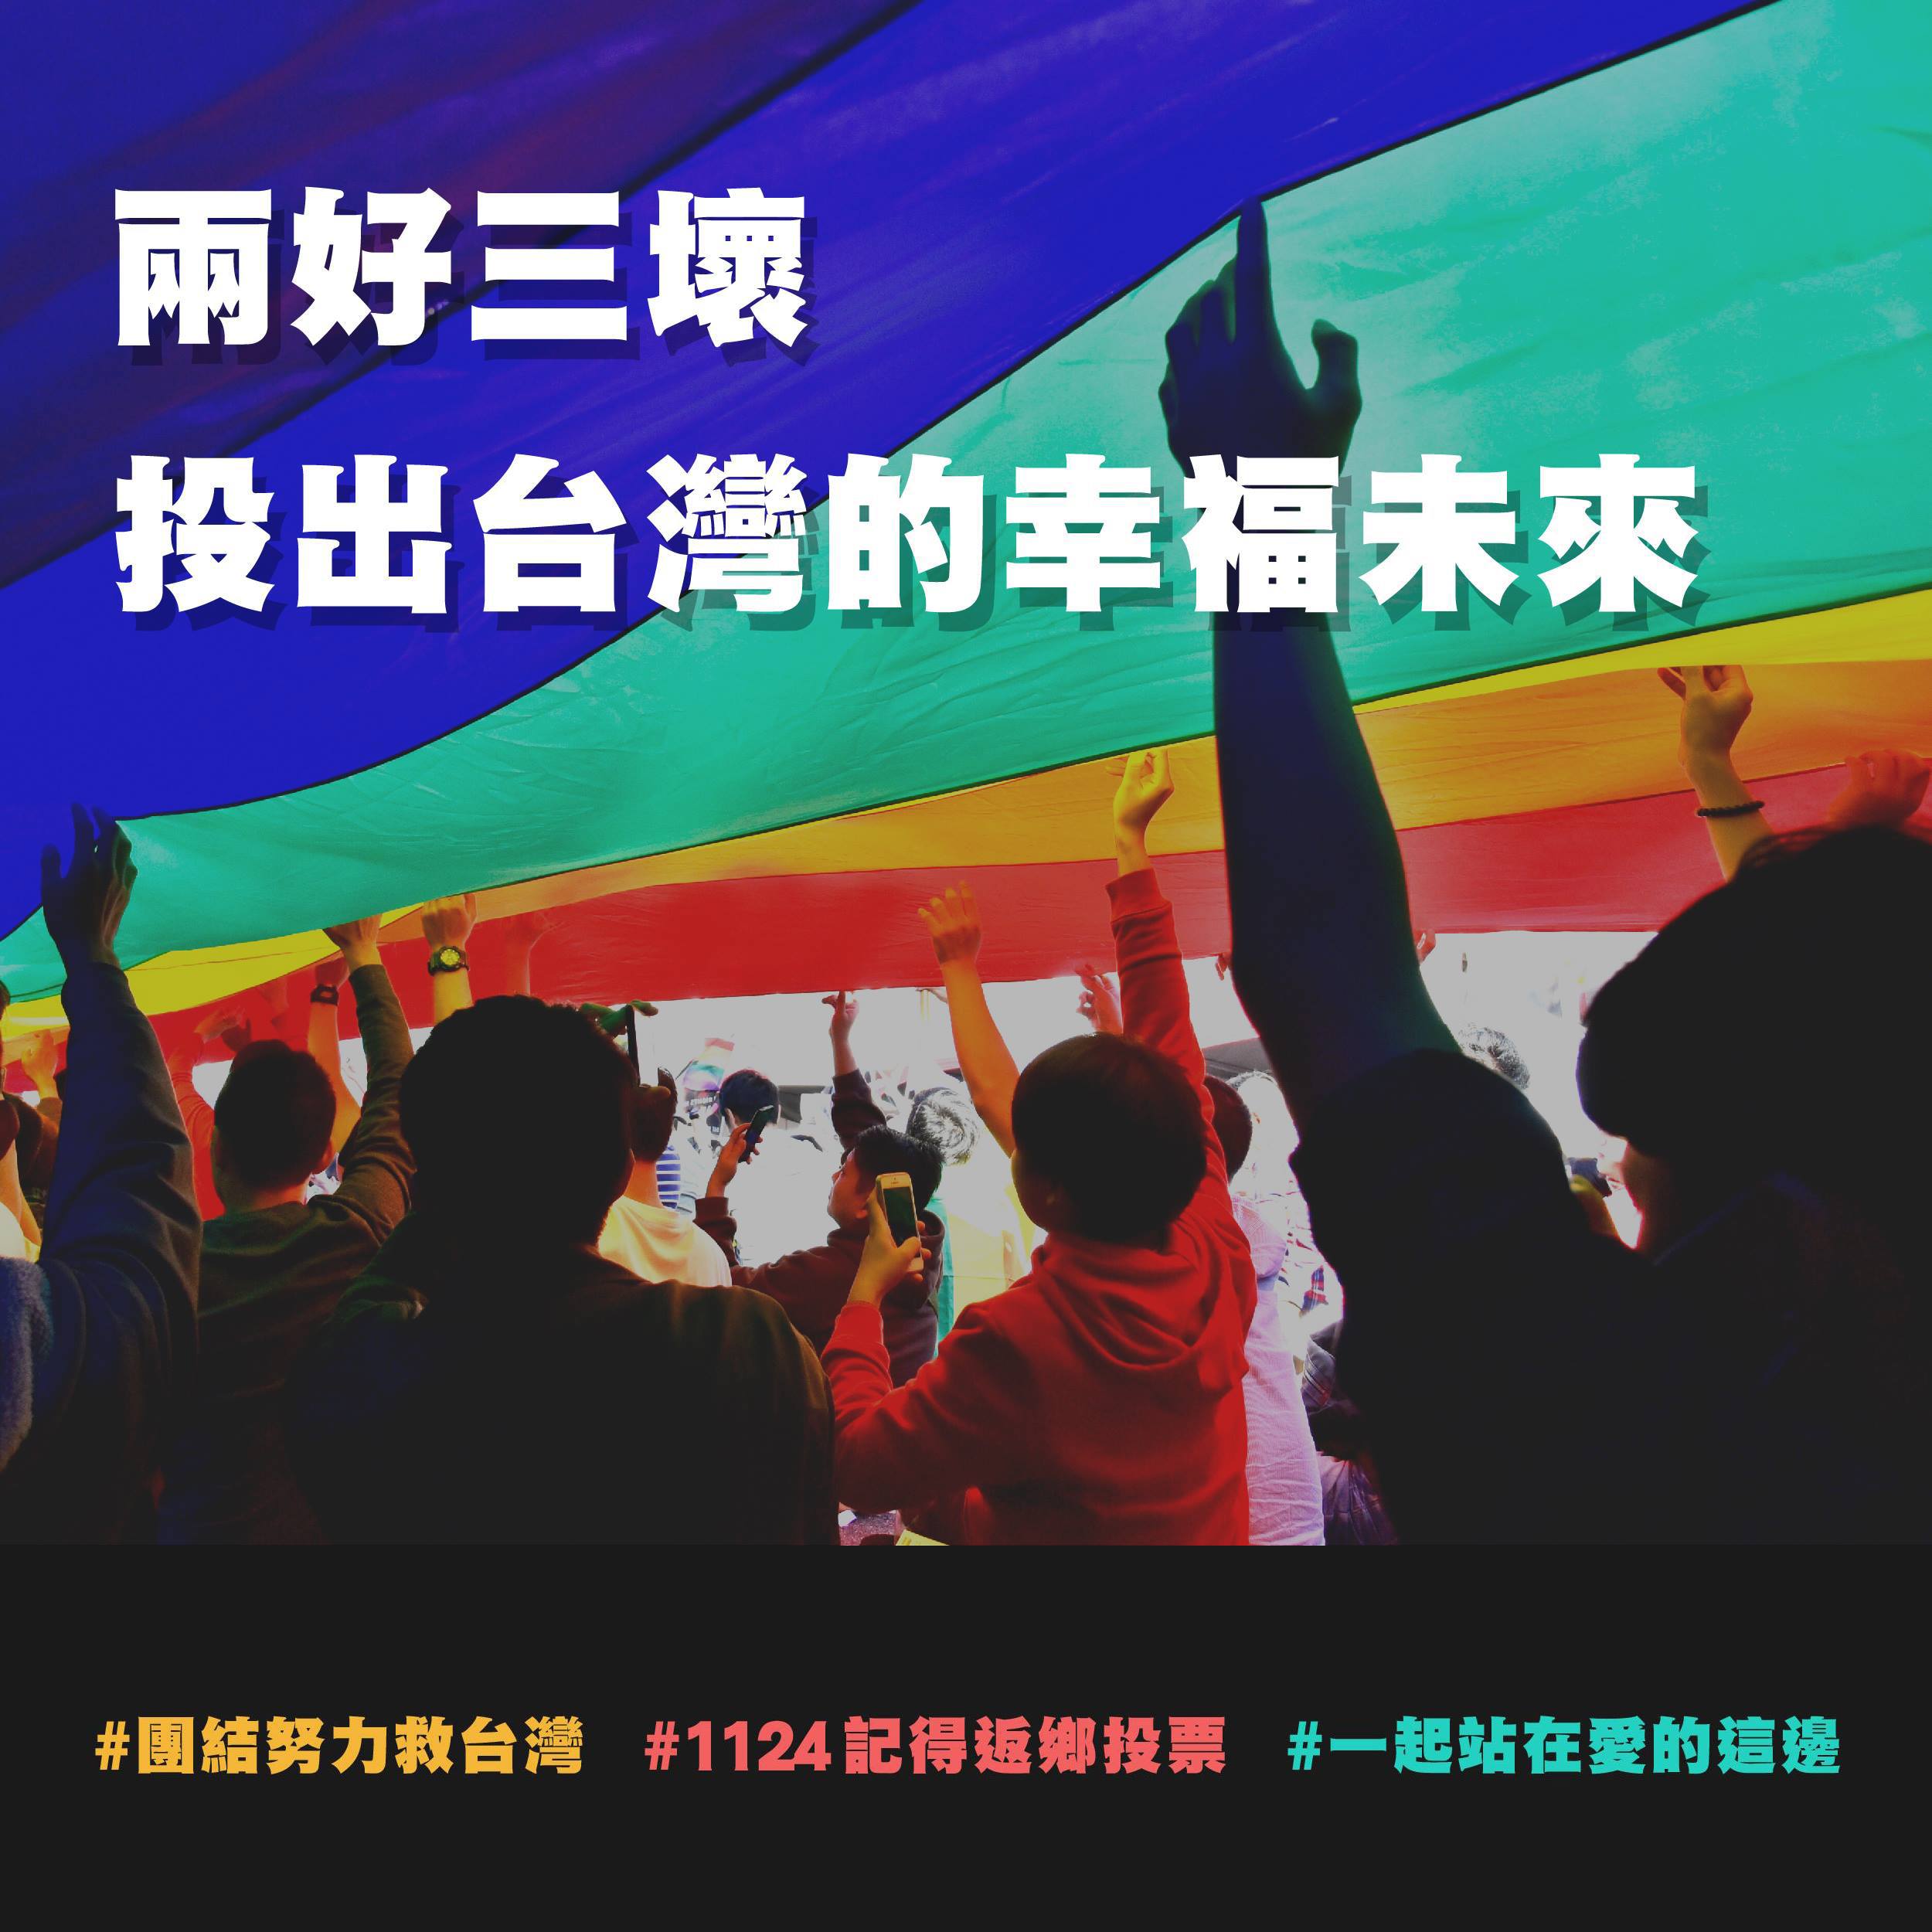 1124返家投票，兩好三壞，投出台灣幸福未來 《聯合聲明》